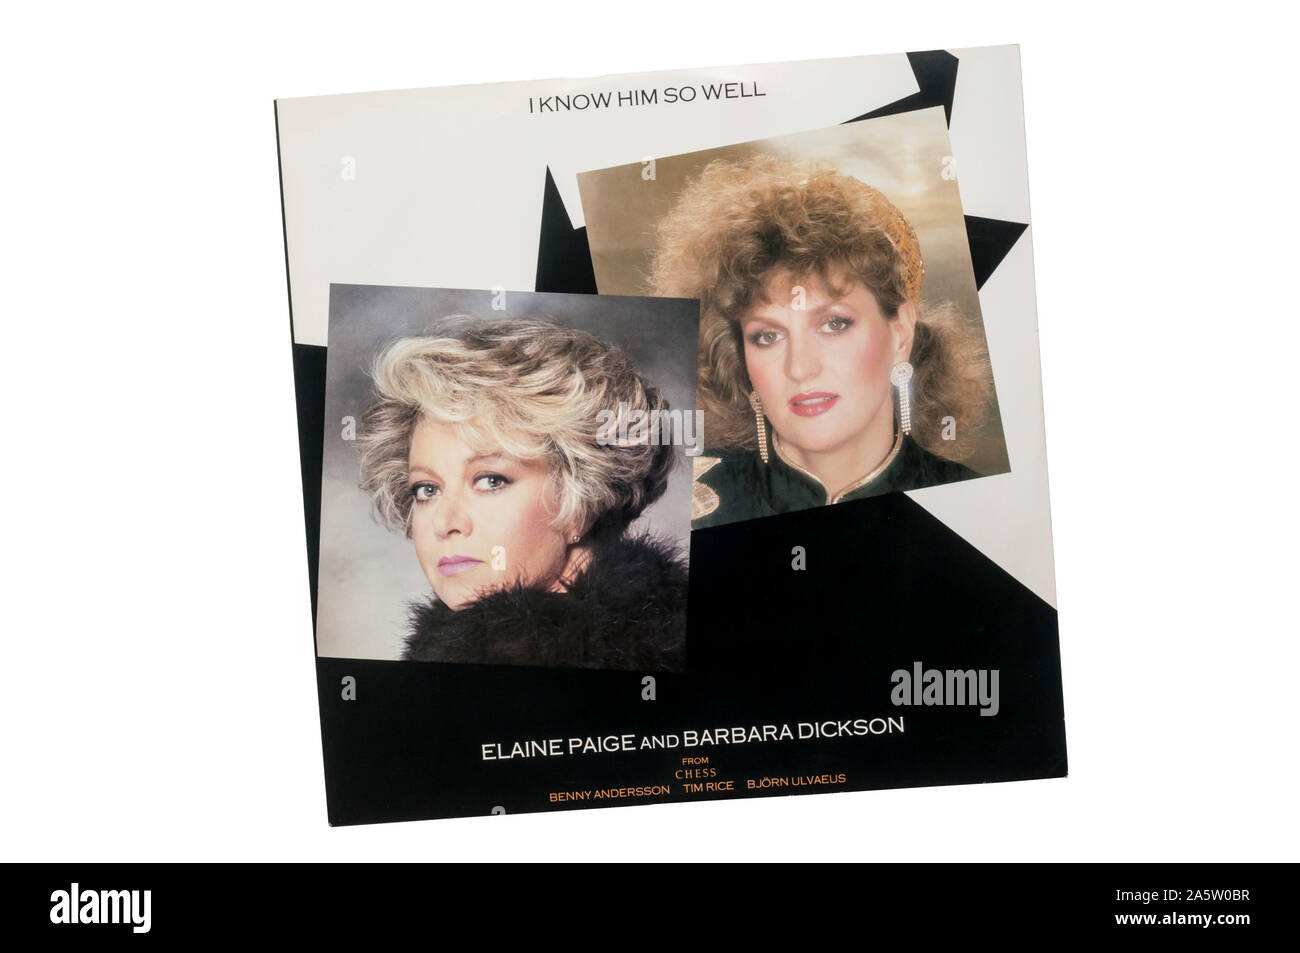 Dodici pollici del singolo lo conosco così bene da Elaine Paige & Barbara Dickson dal musical Chess. Rilasciato nel 1984. Foto Stock